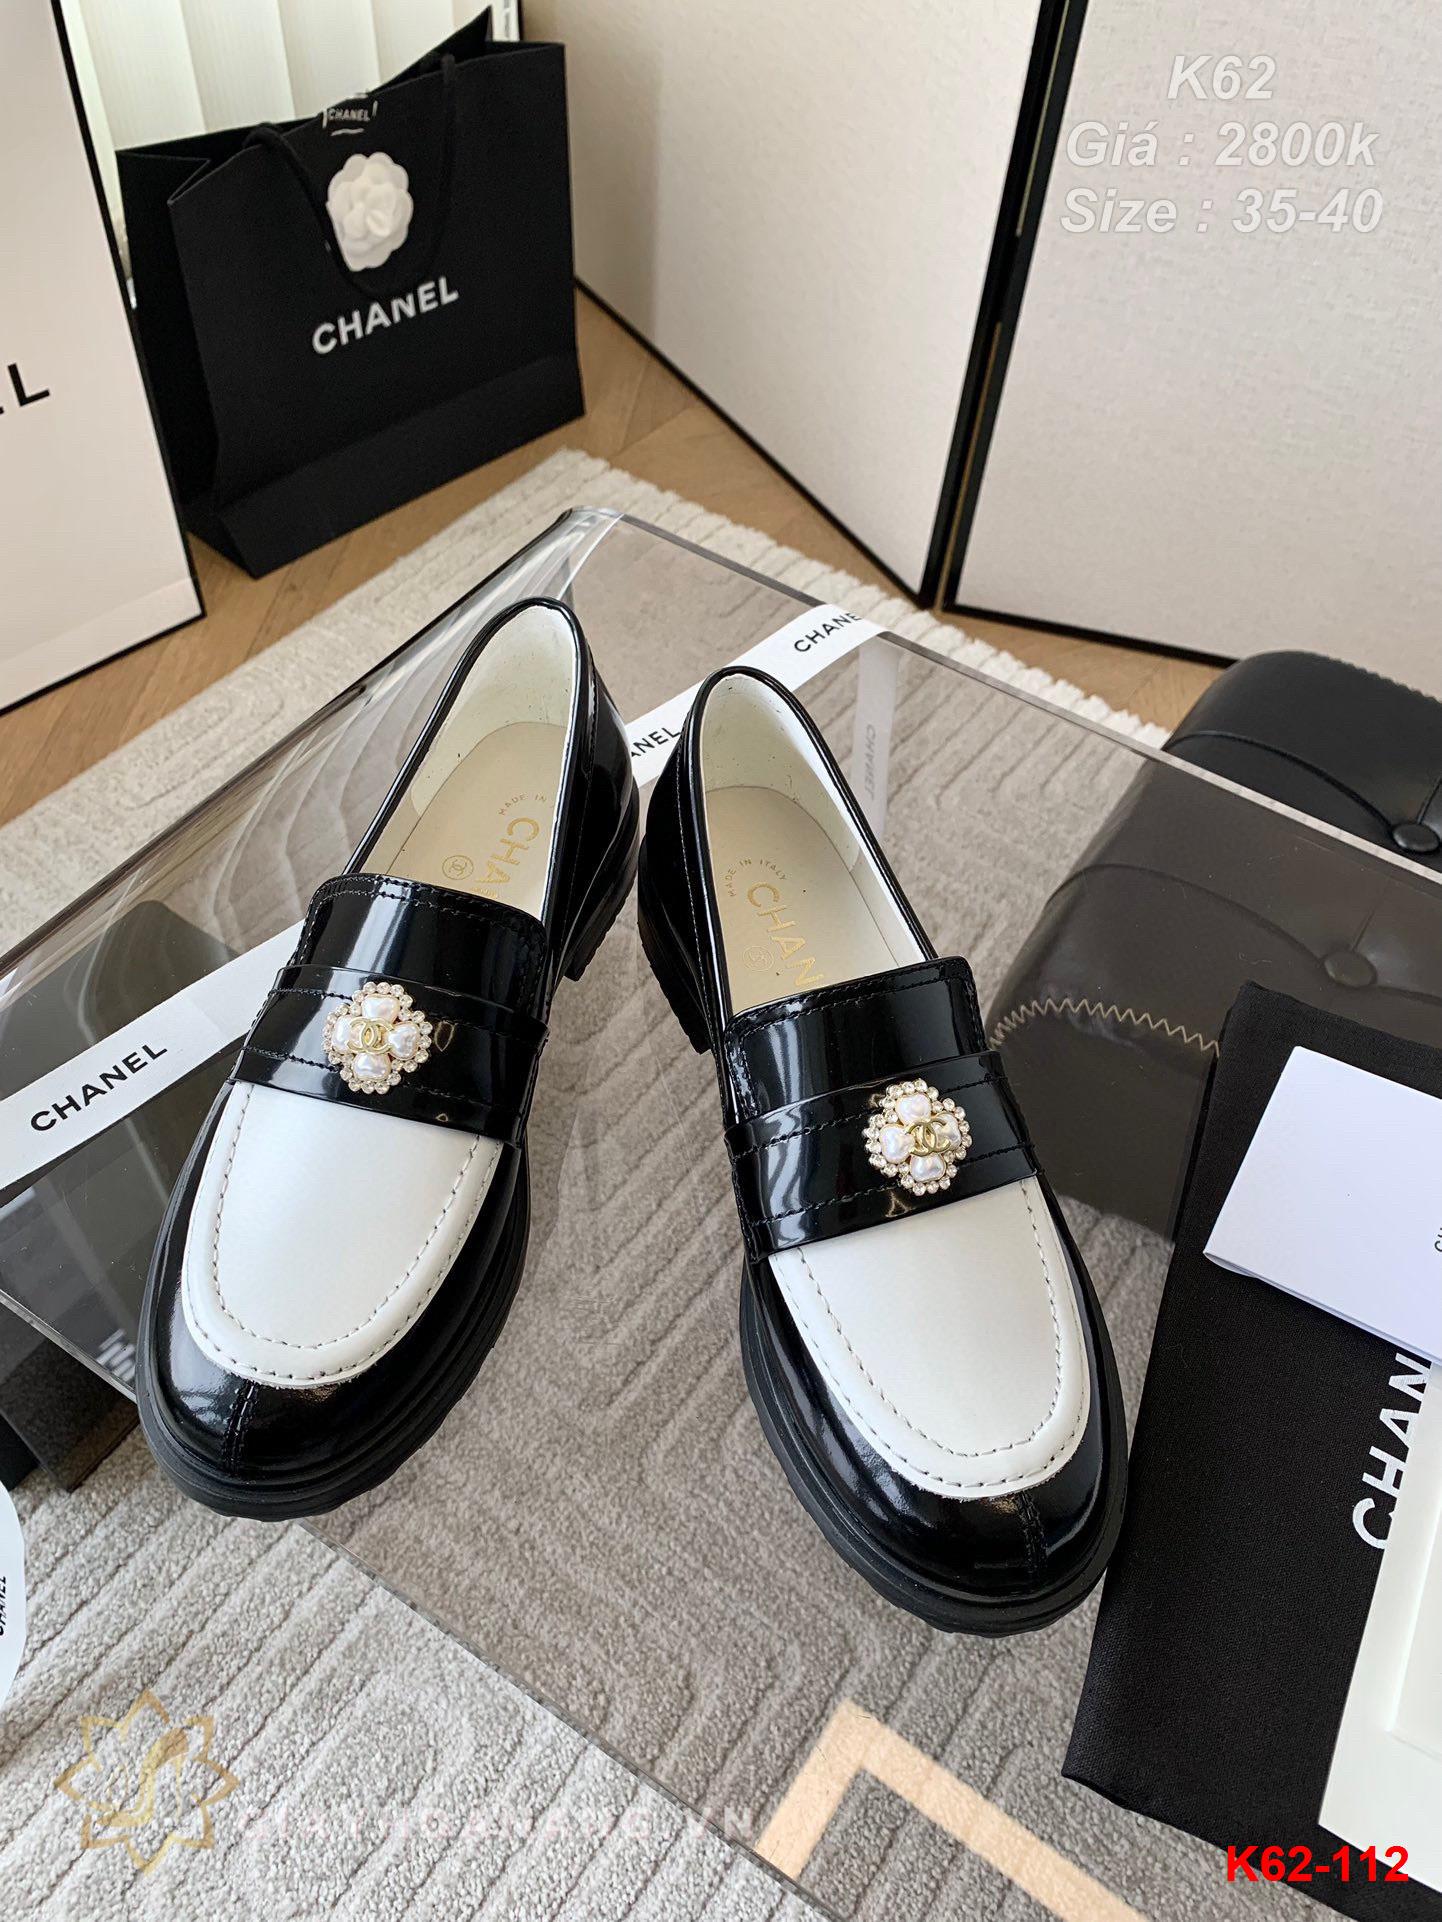 K62-112 Chanel giày lười siêu cấp